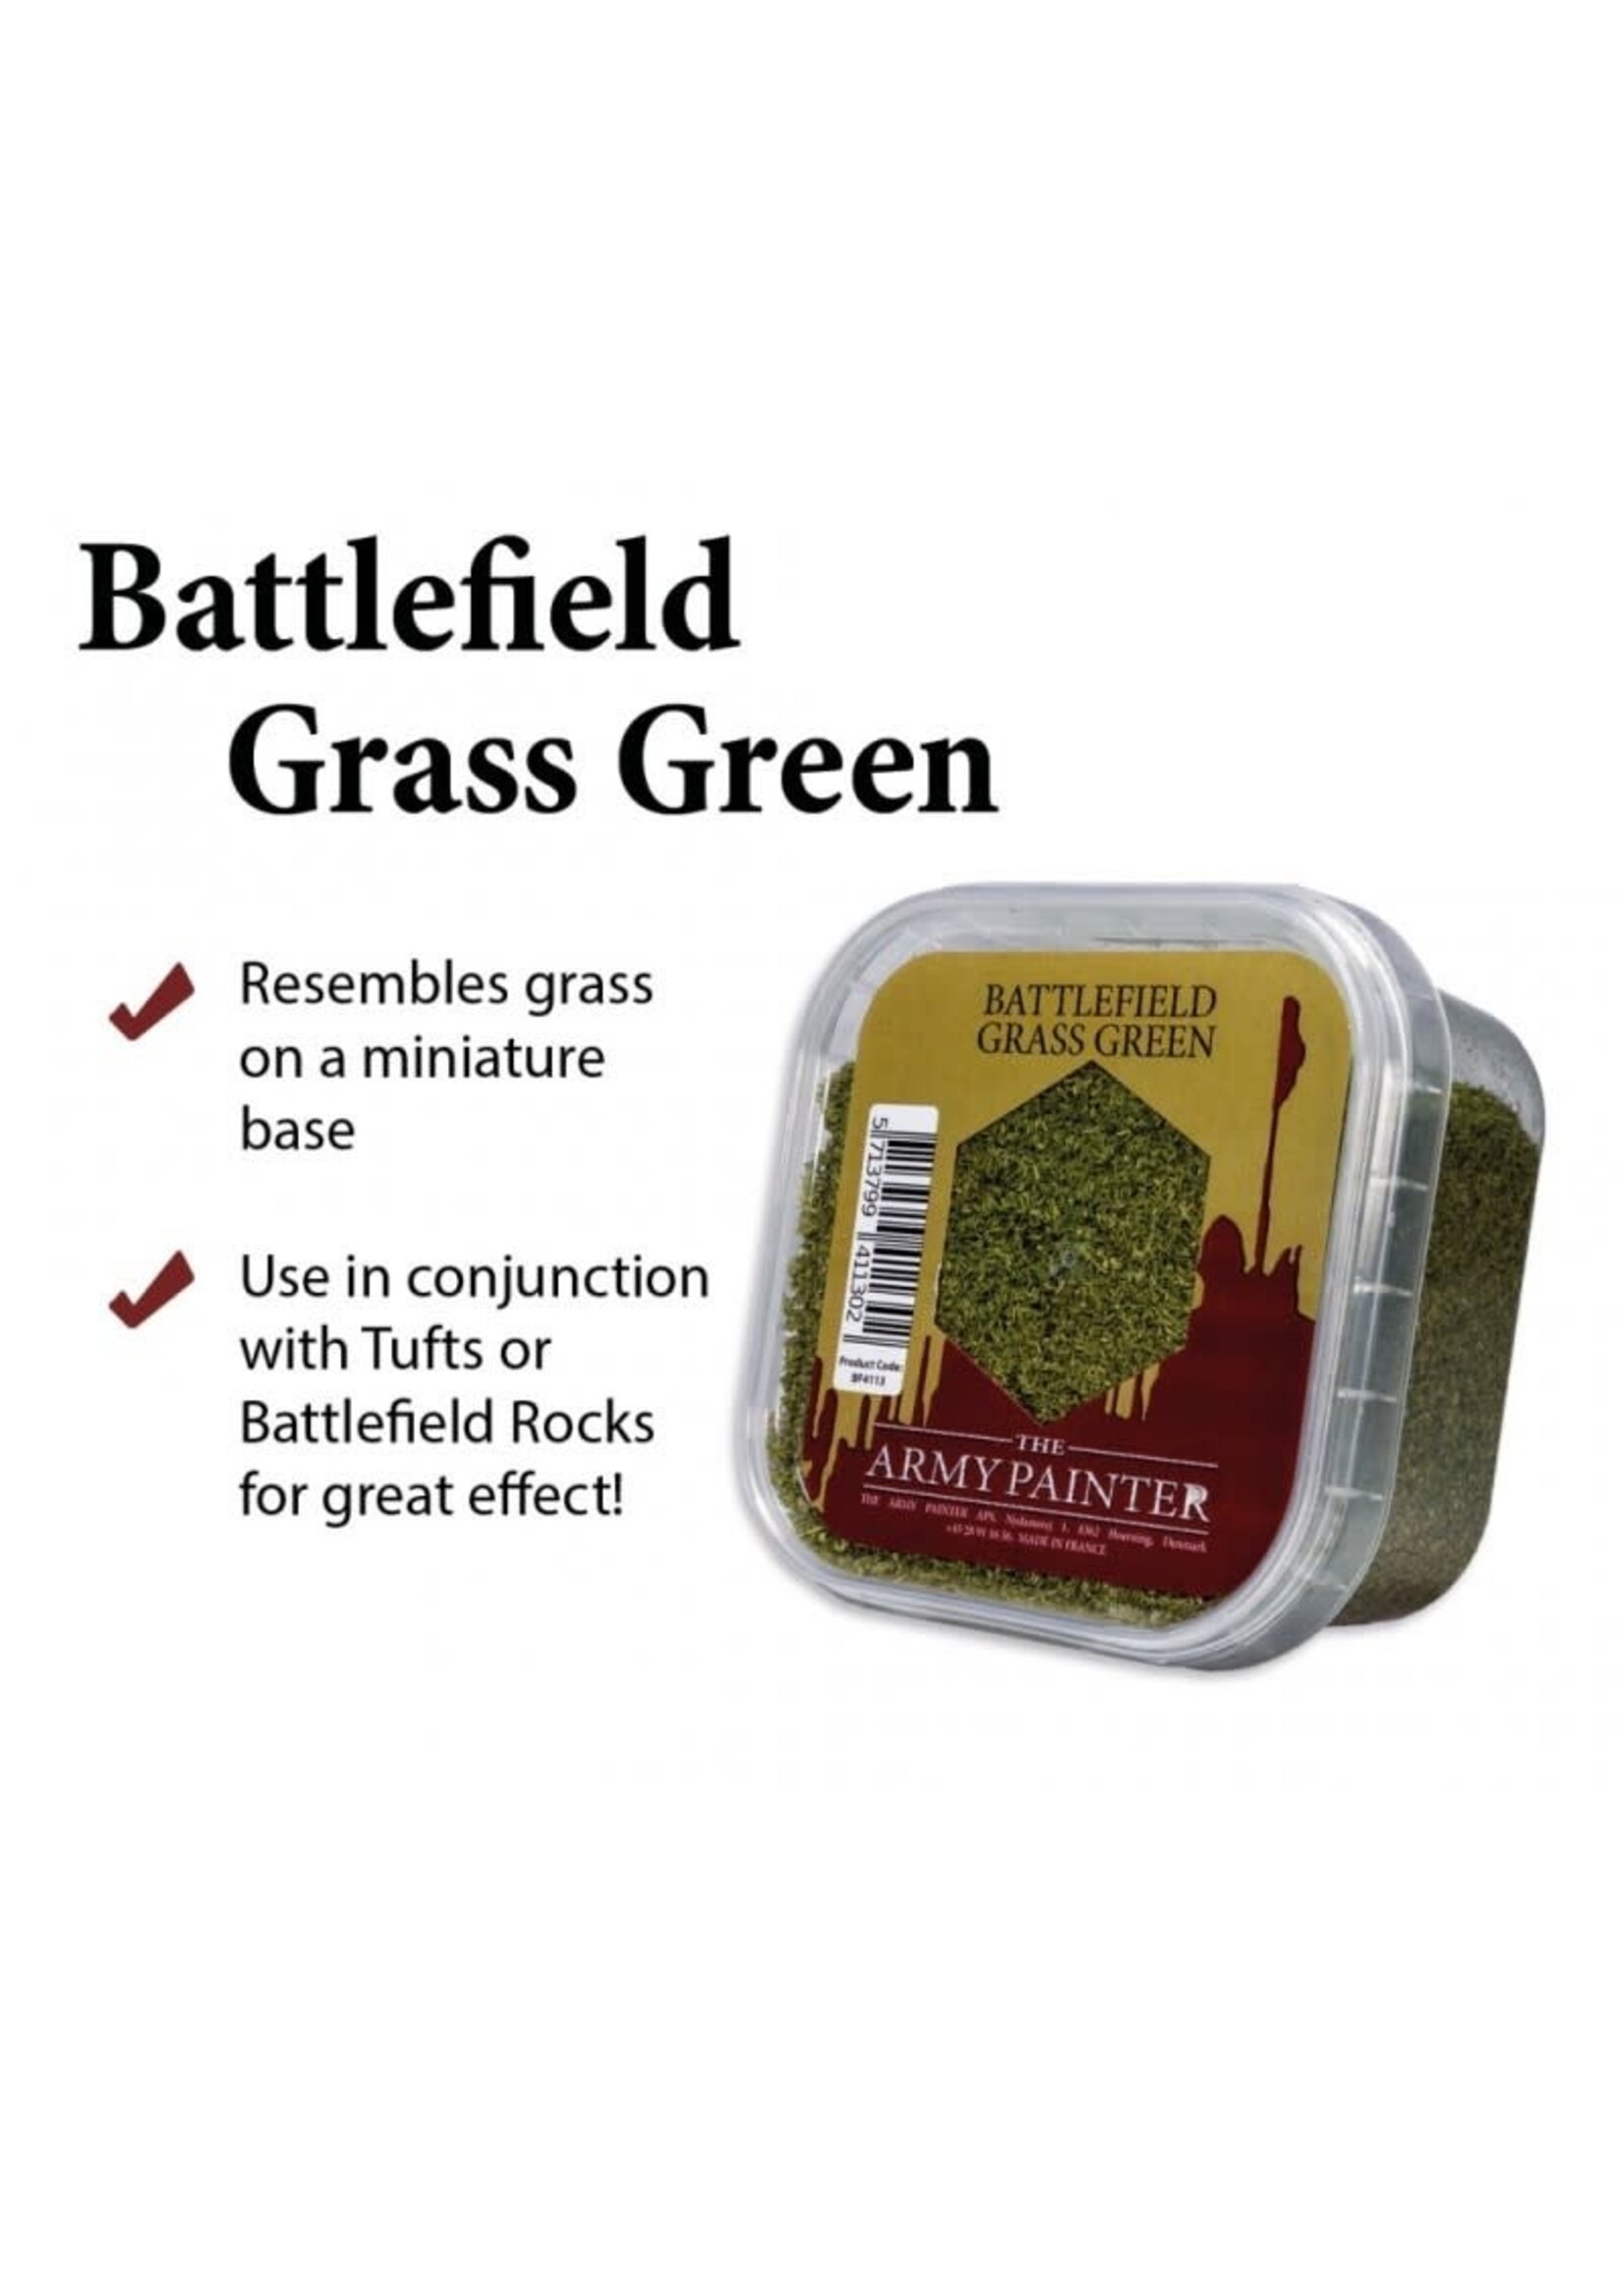 ARMY PAINTER BATTLEFIELDS XP GRASS GREEN